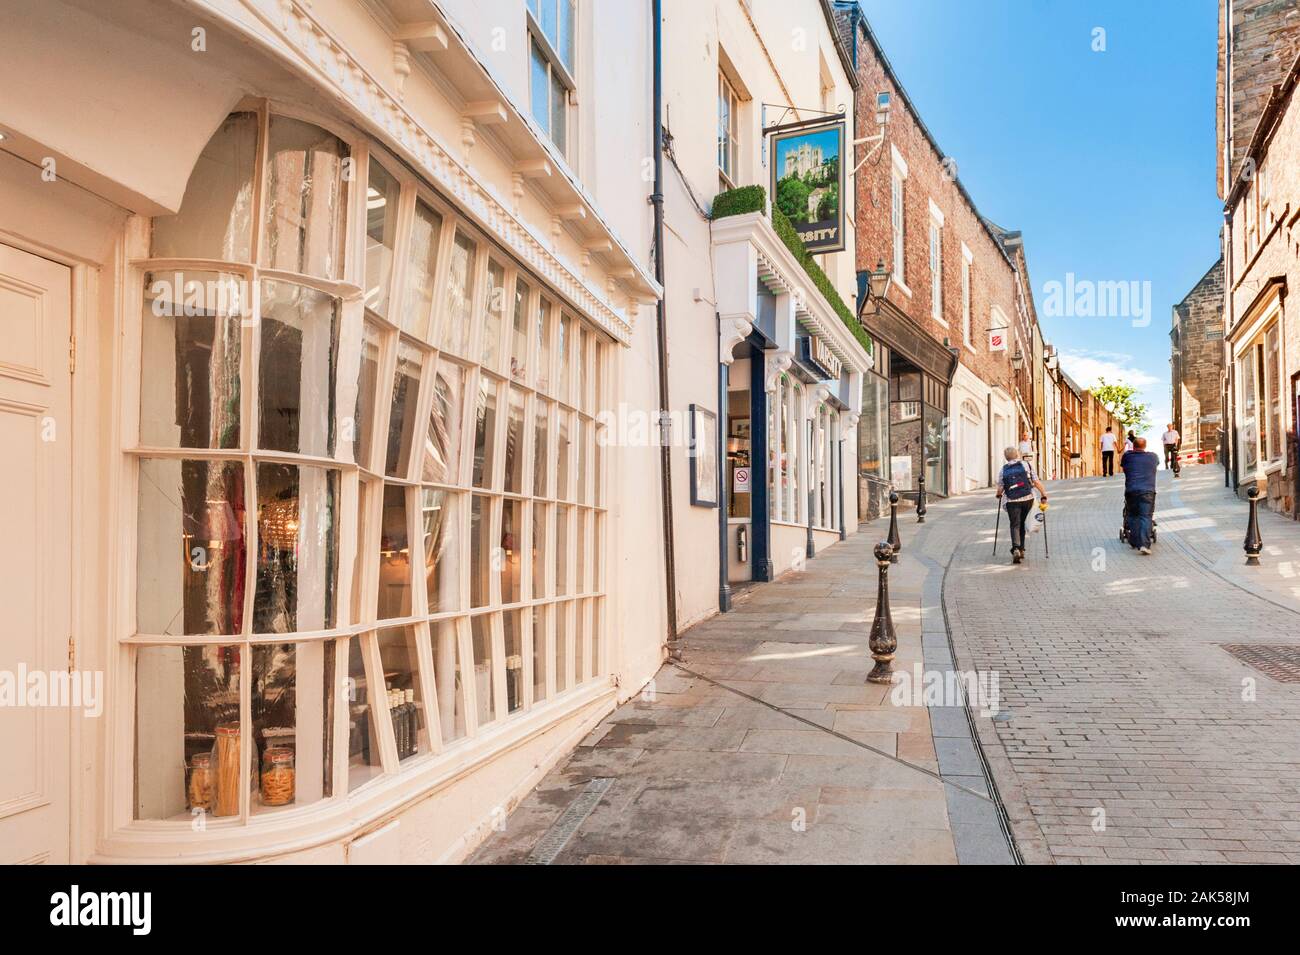 Enge gepflasterte Straße späten 18. oder frühen 19. Jahrhundert denkmalgeschützten Gebäuden und alten Shop frontage Sattler Street Durham Stockfoto